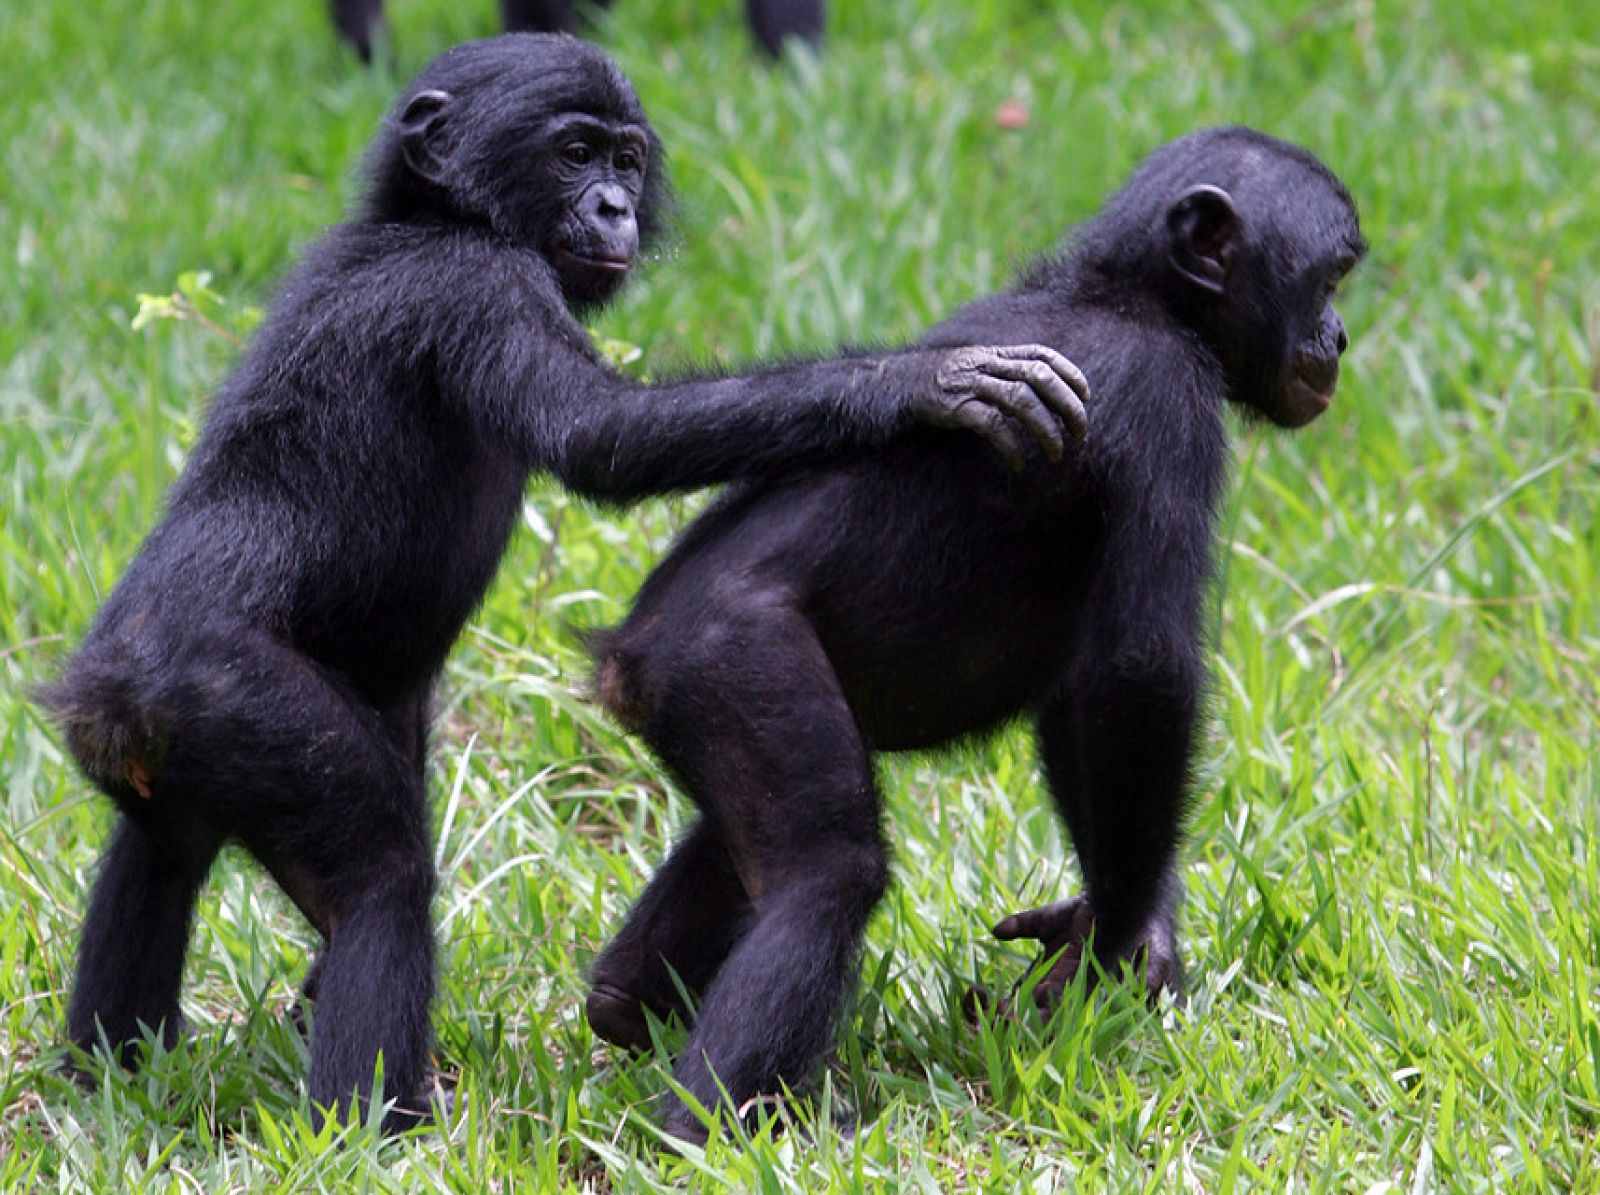 Los bonobos son, junto a los chimpancés, los parientes vivos más cercanos genéticamente a los seres humanos